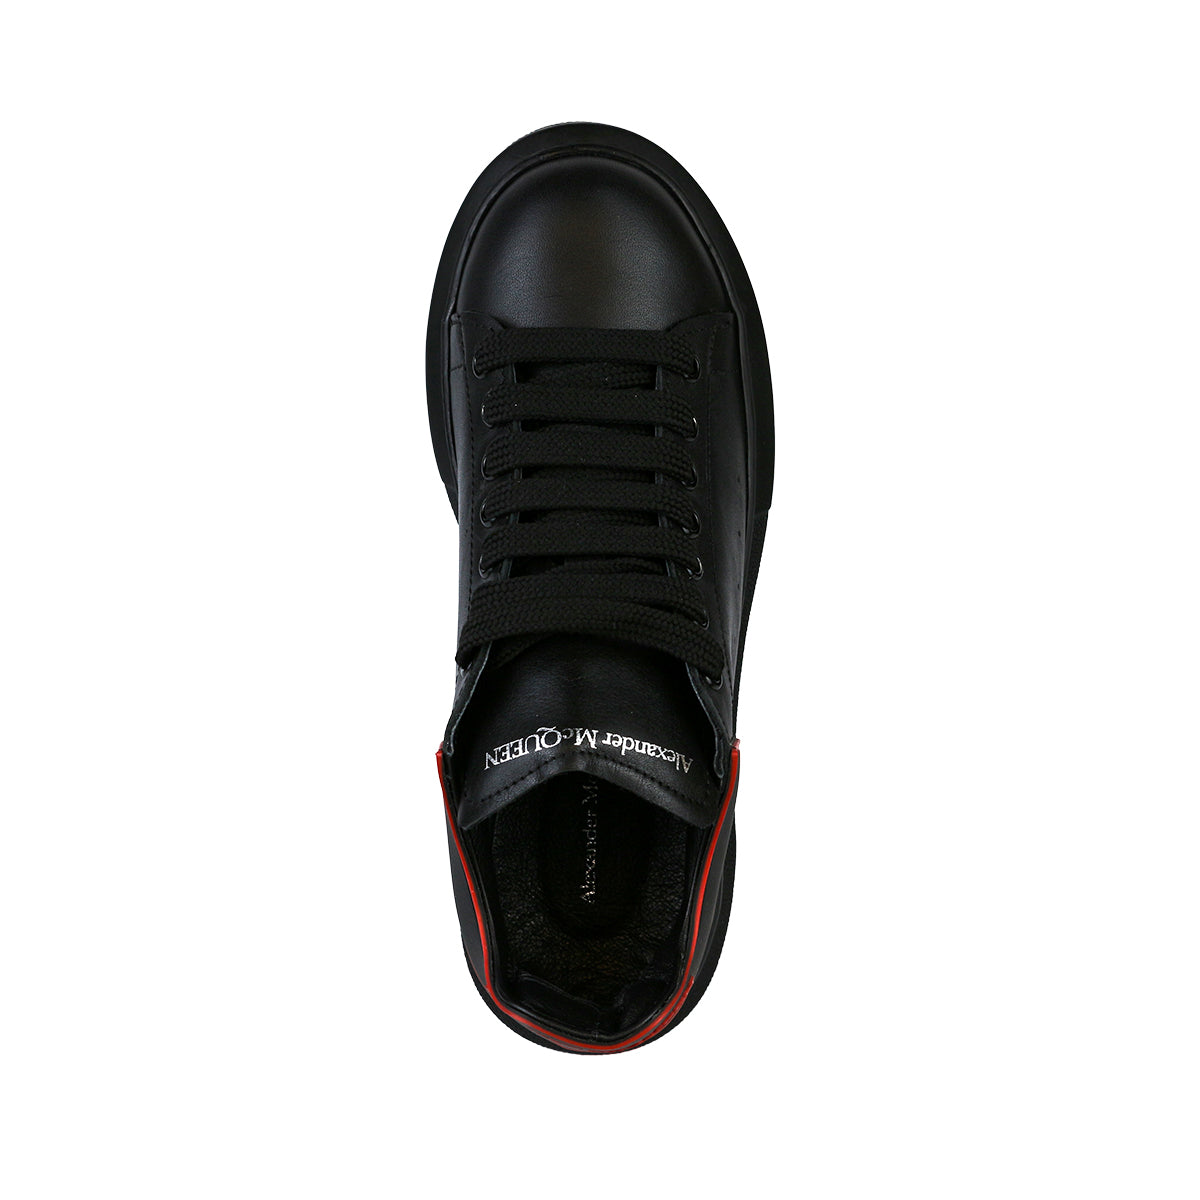 Alexander McQueen Kadın Hakiki Deri Bağcıklı Siyah Sneaker Ayakkabı